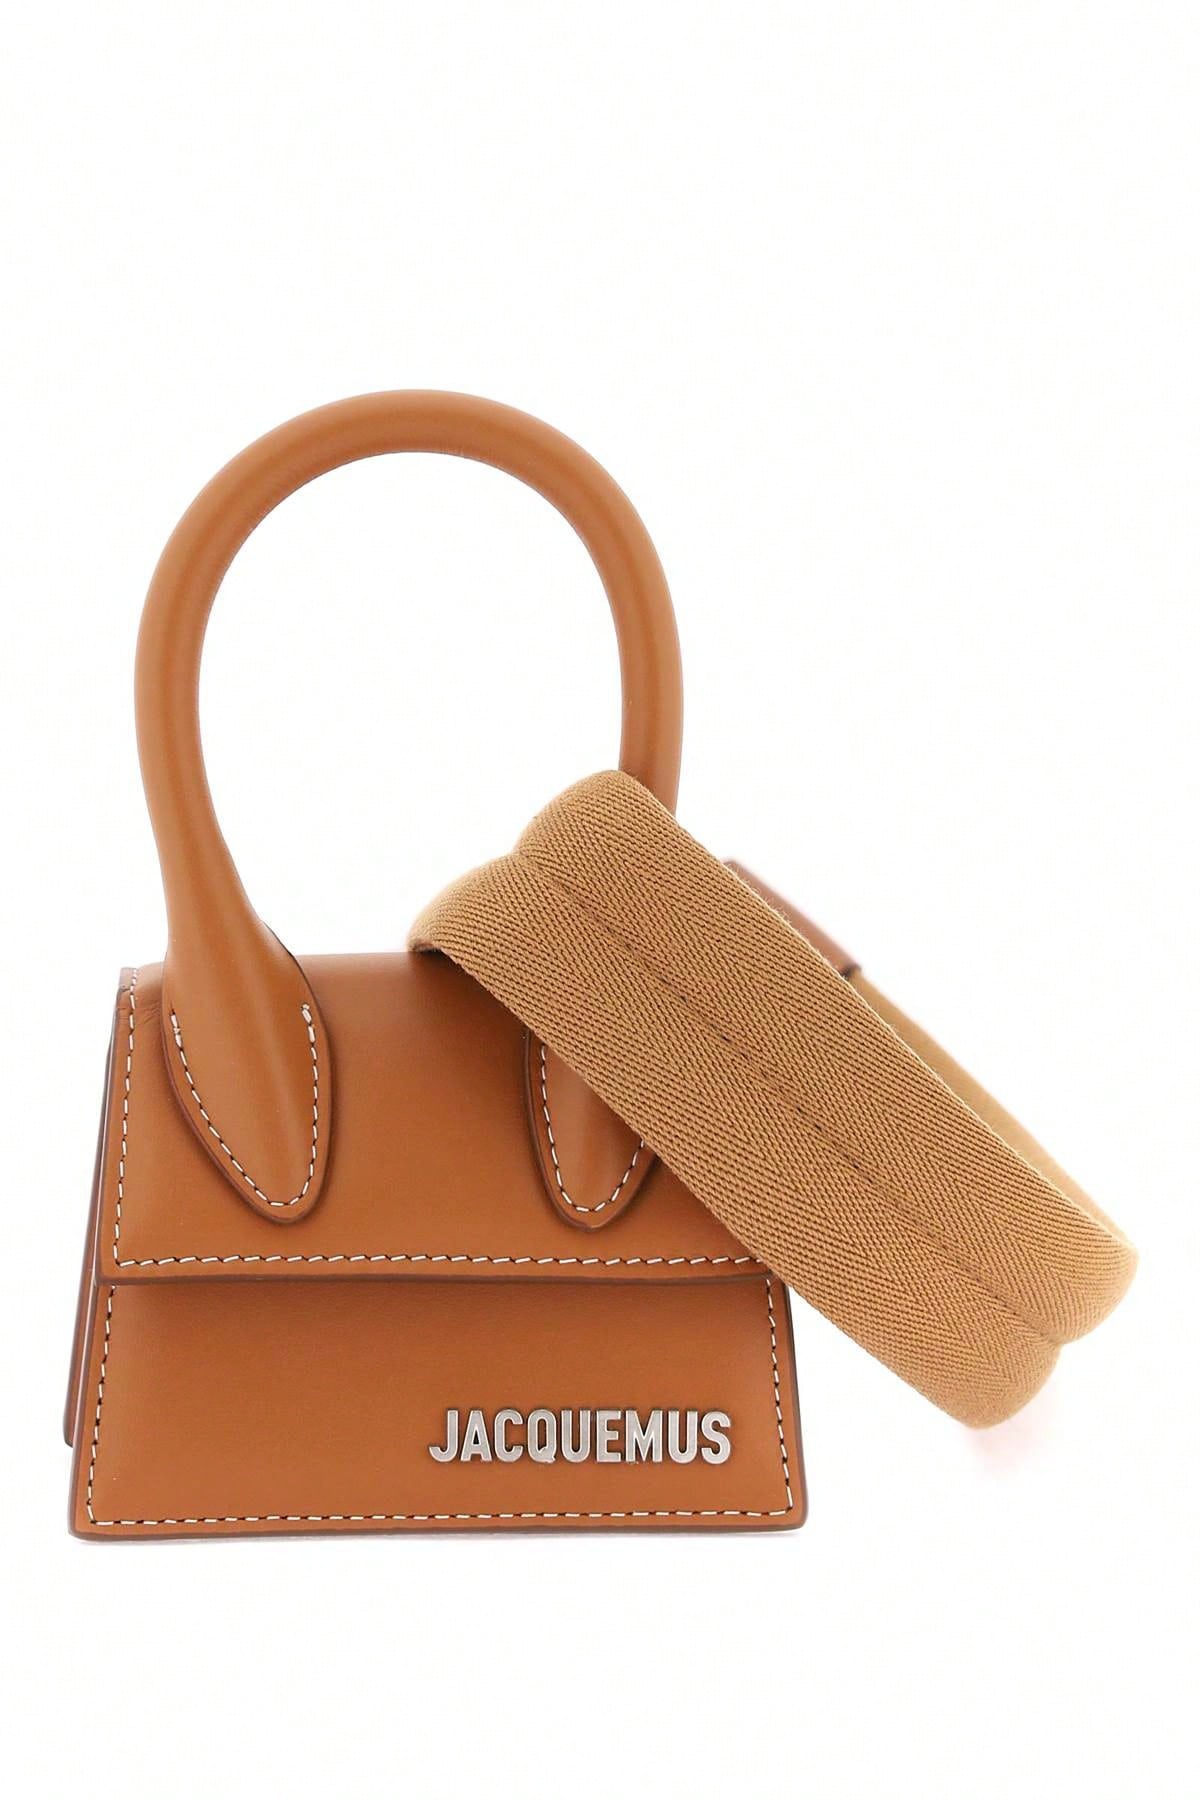 Jacquemus Мини-сумка Jacquemus 'Le Chiquito', черный черная сумка les sculptures le petit calino jacquemus